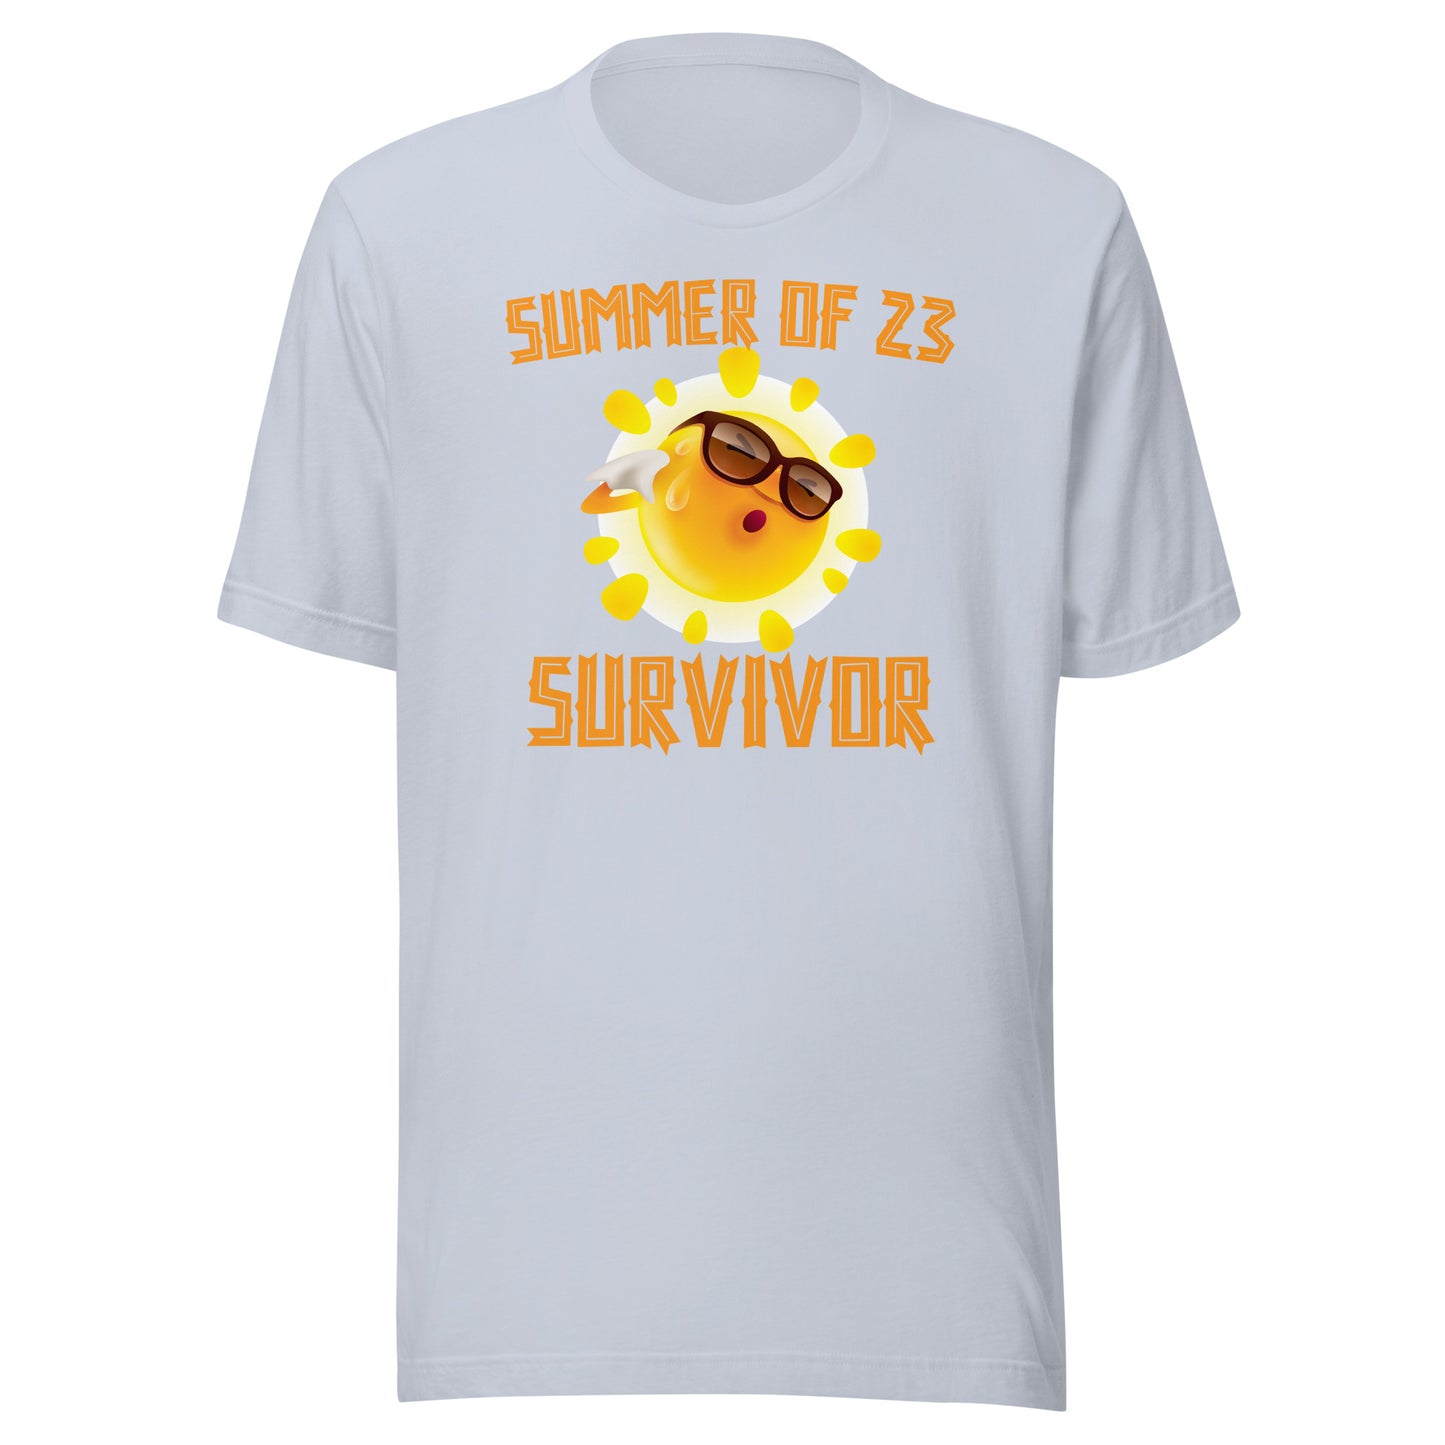 Summer of 23 Survivor